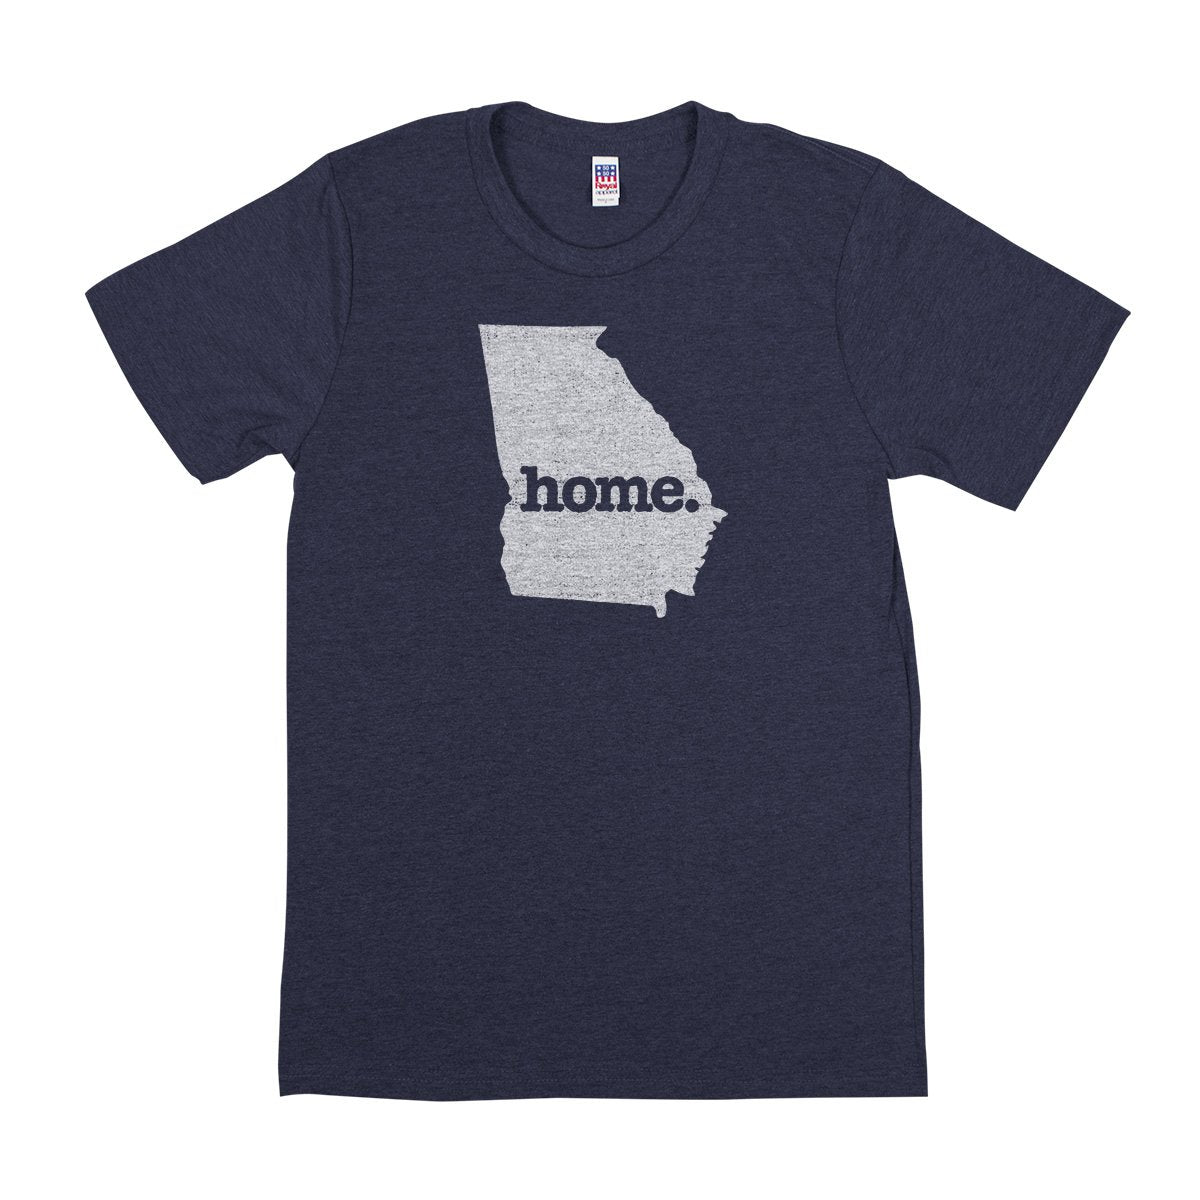 home. Men’s Unisex T-Shirt - Utah